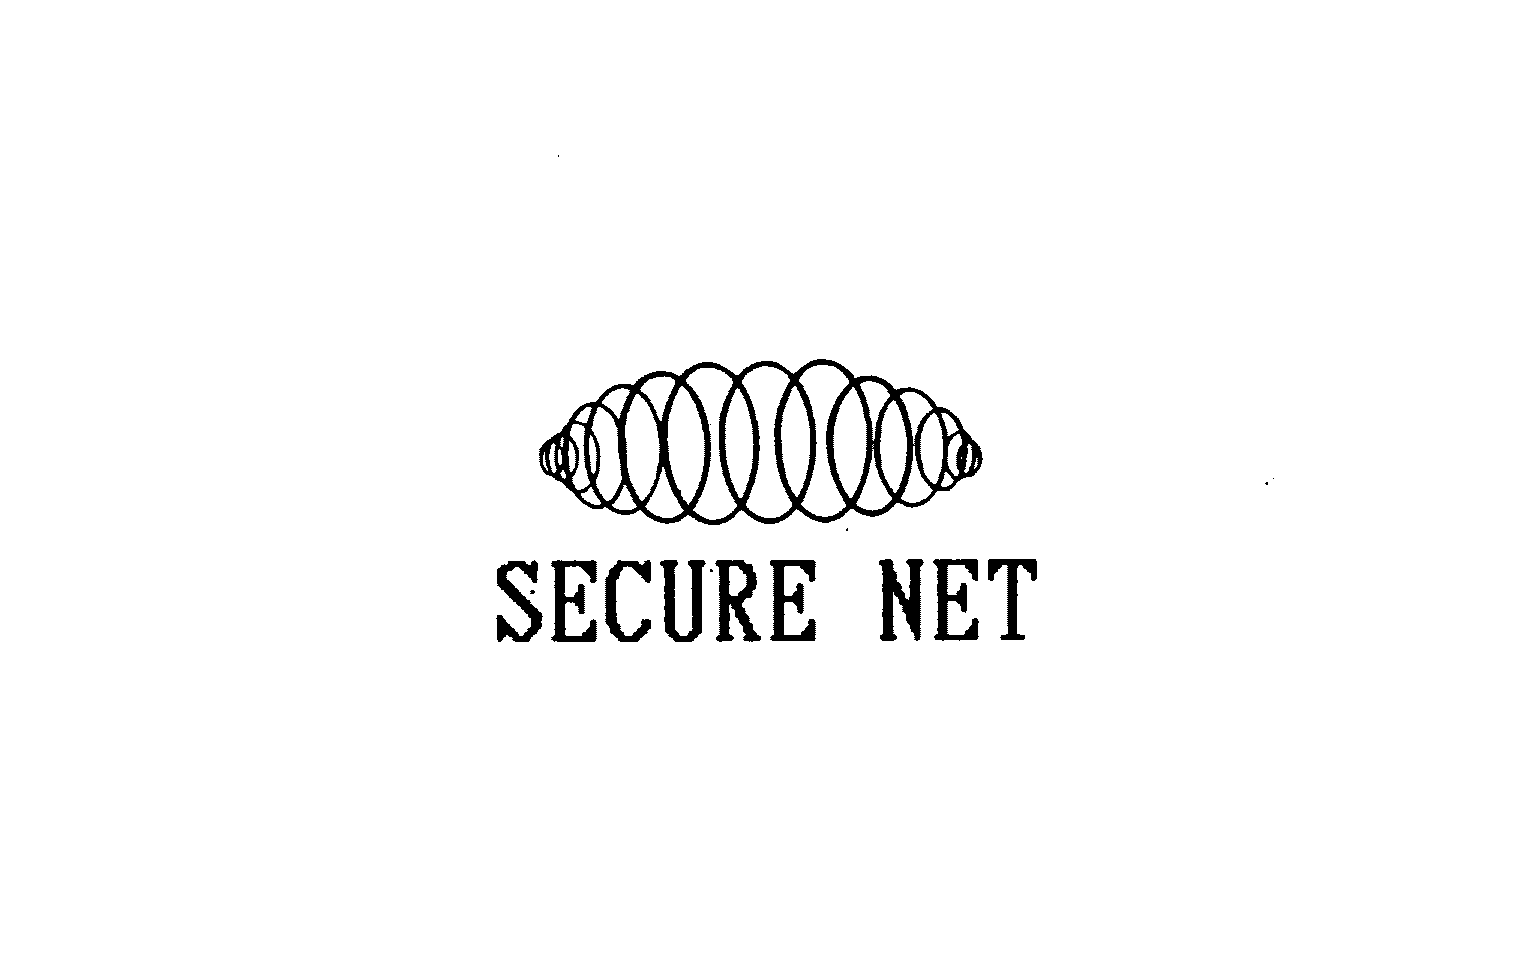  SECURE NET